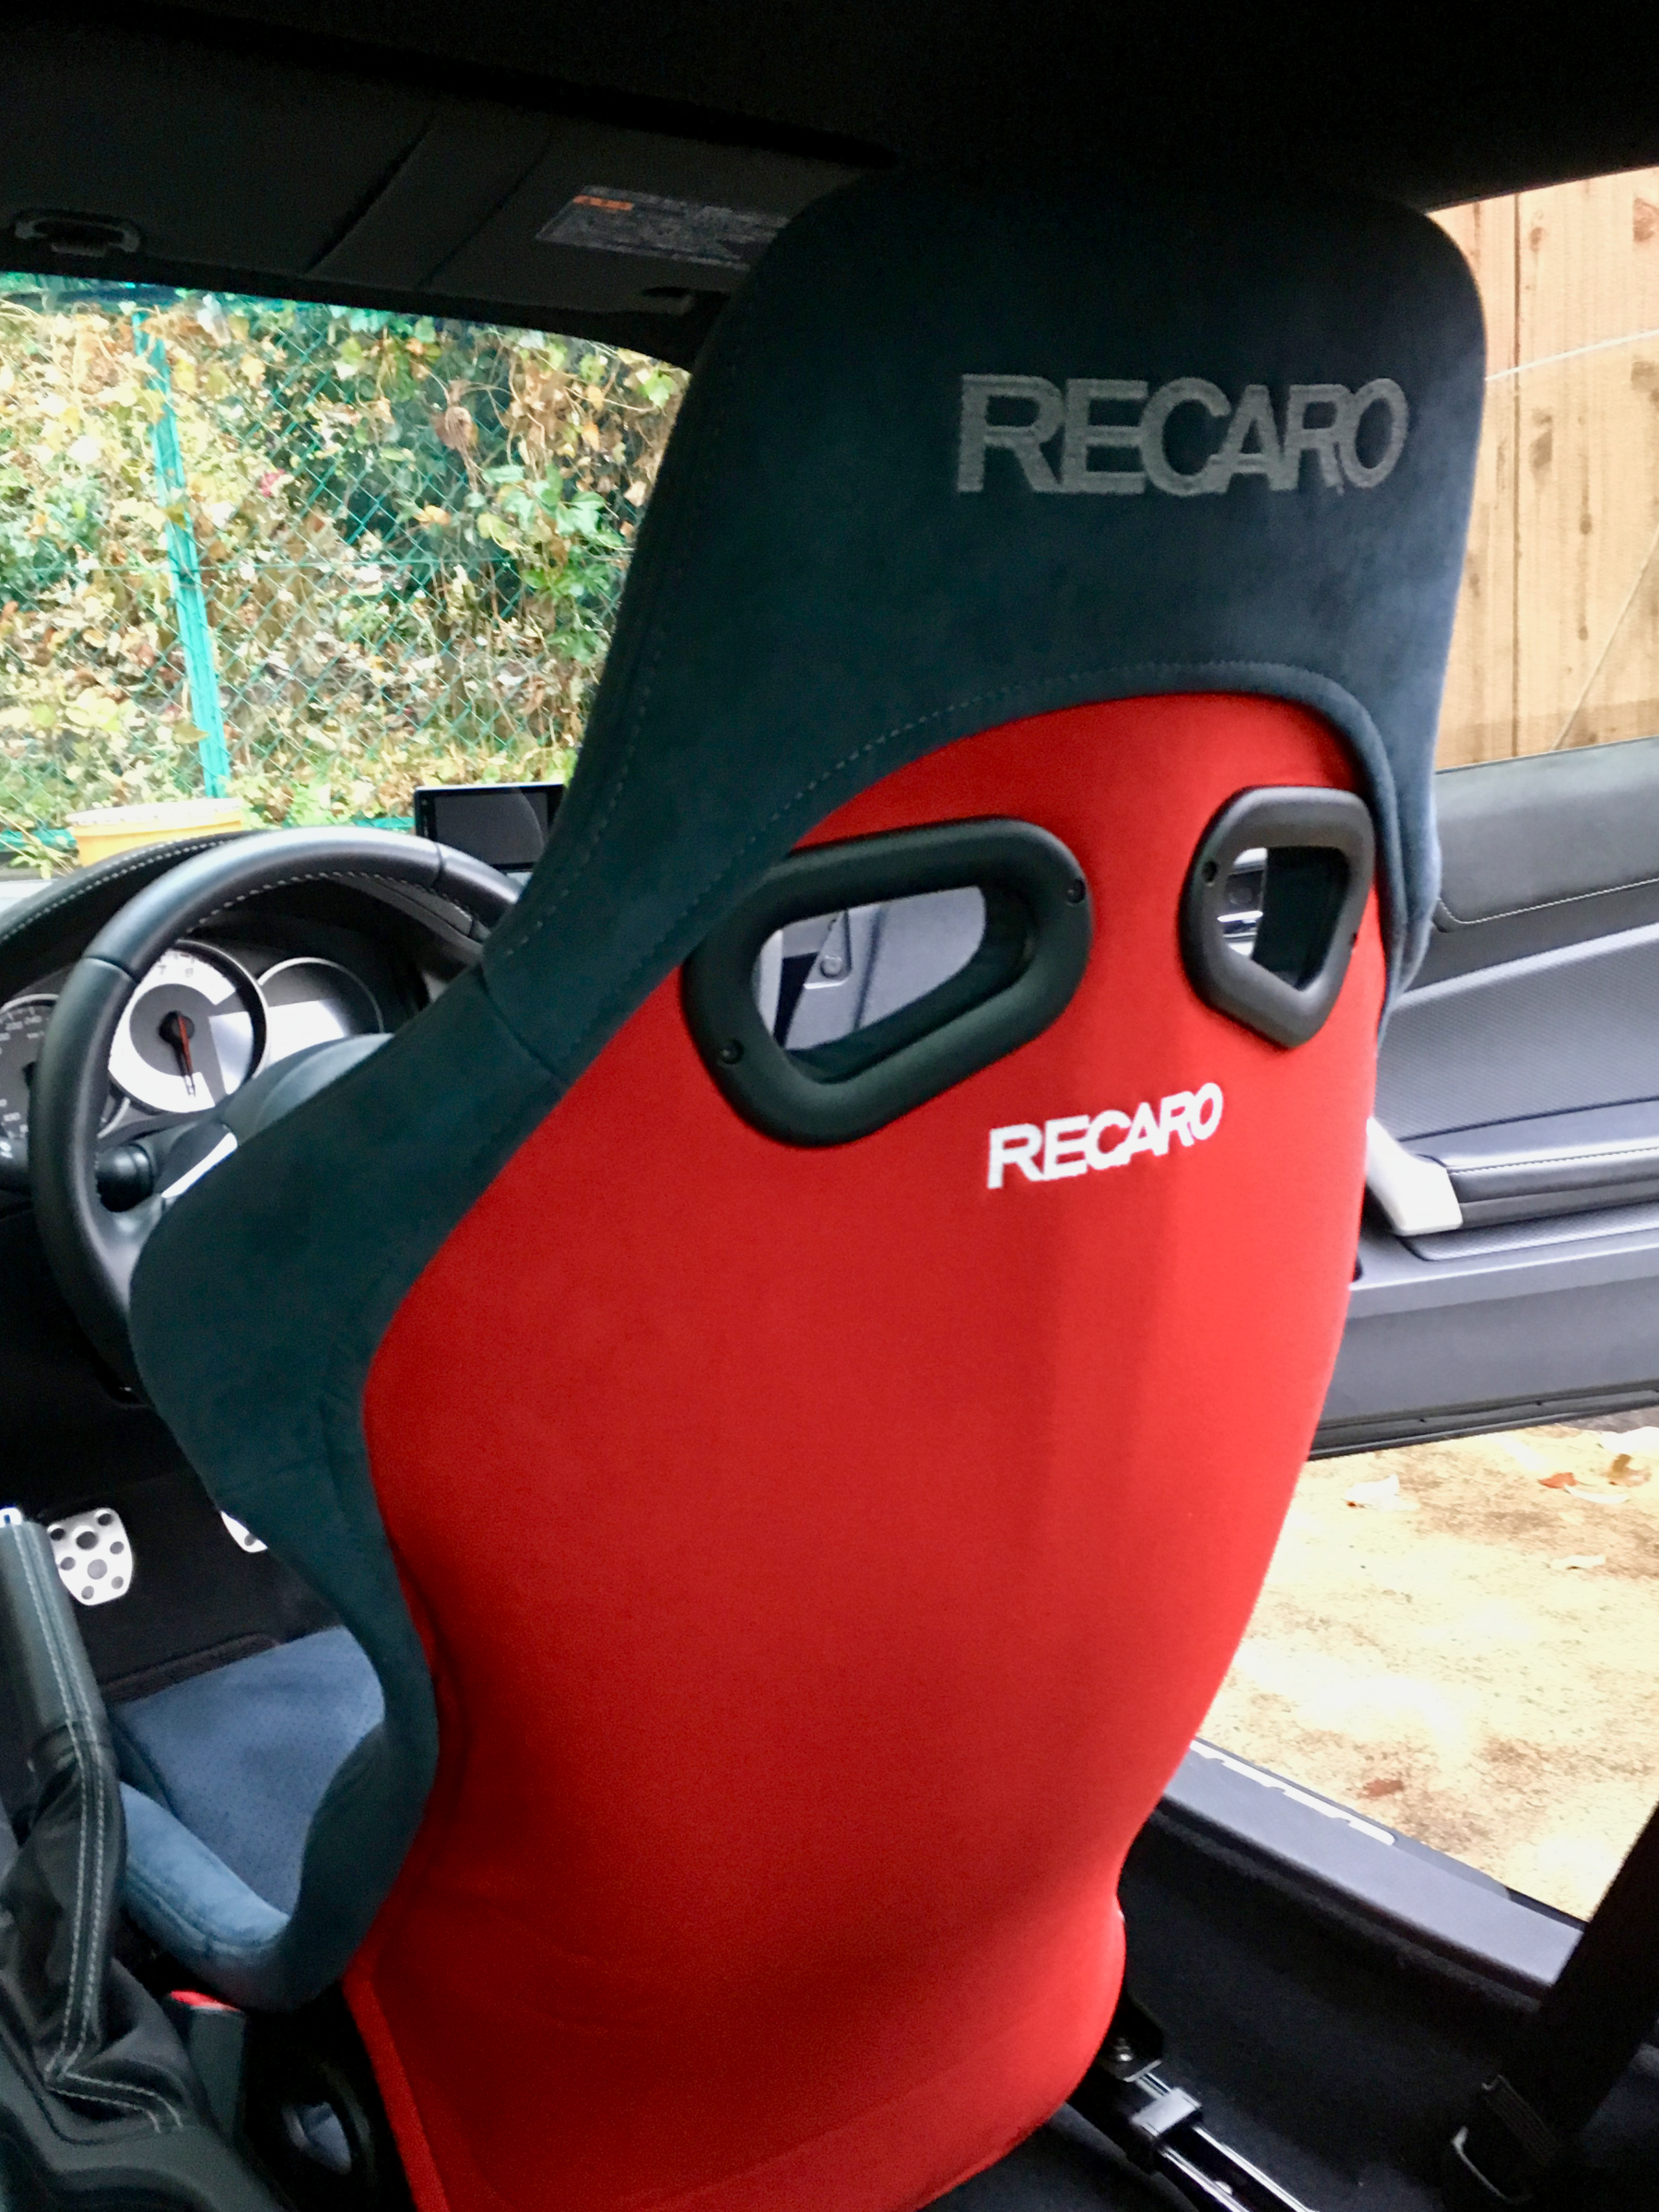 RECARO RS-G ALCANTARA Version ✖ バックレストカバー | トヨタ 86 | ☆メモらんだむ☆ | コクピット 福島 |  車のカスタマイズにかかわるスタッフより